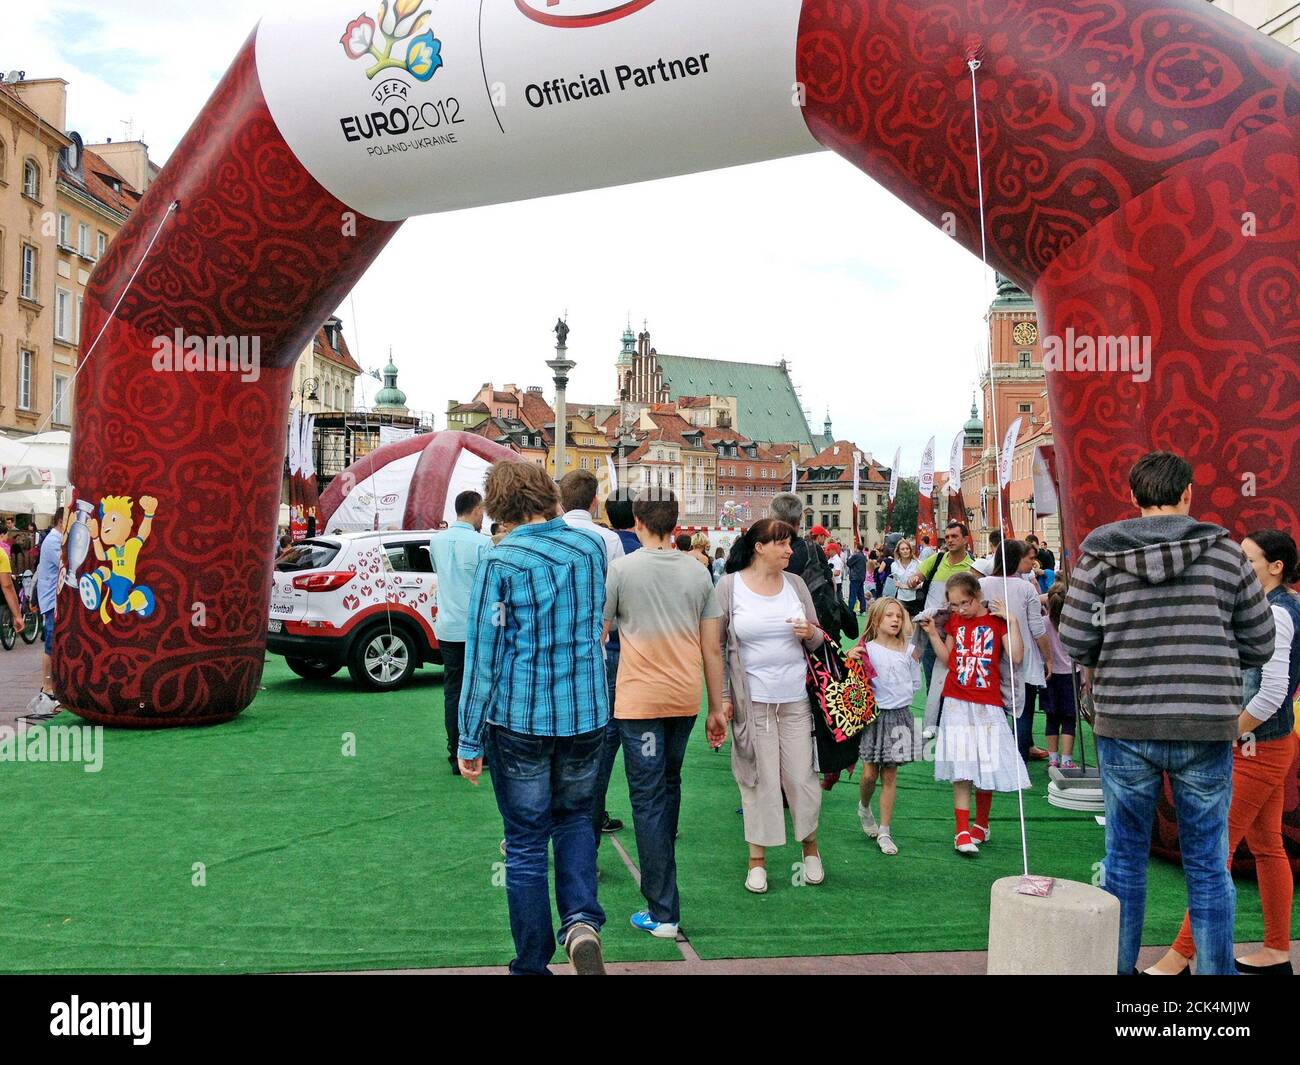 Les visiteurs de la vieille ville de Varsovie, en Pologne, participent aux activités entourant la co-organisation du Championnat européen de football 2012. Banque D'Images